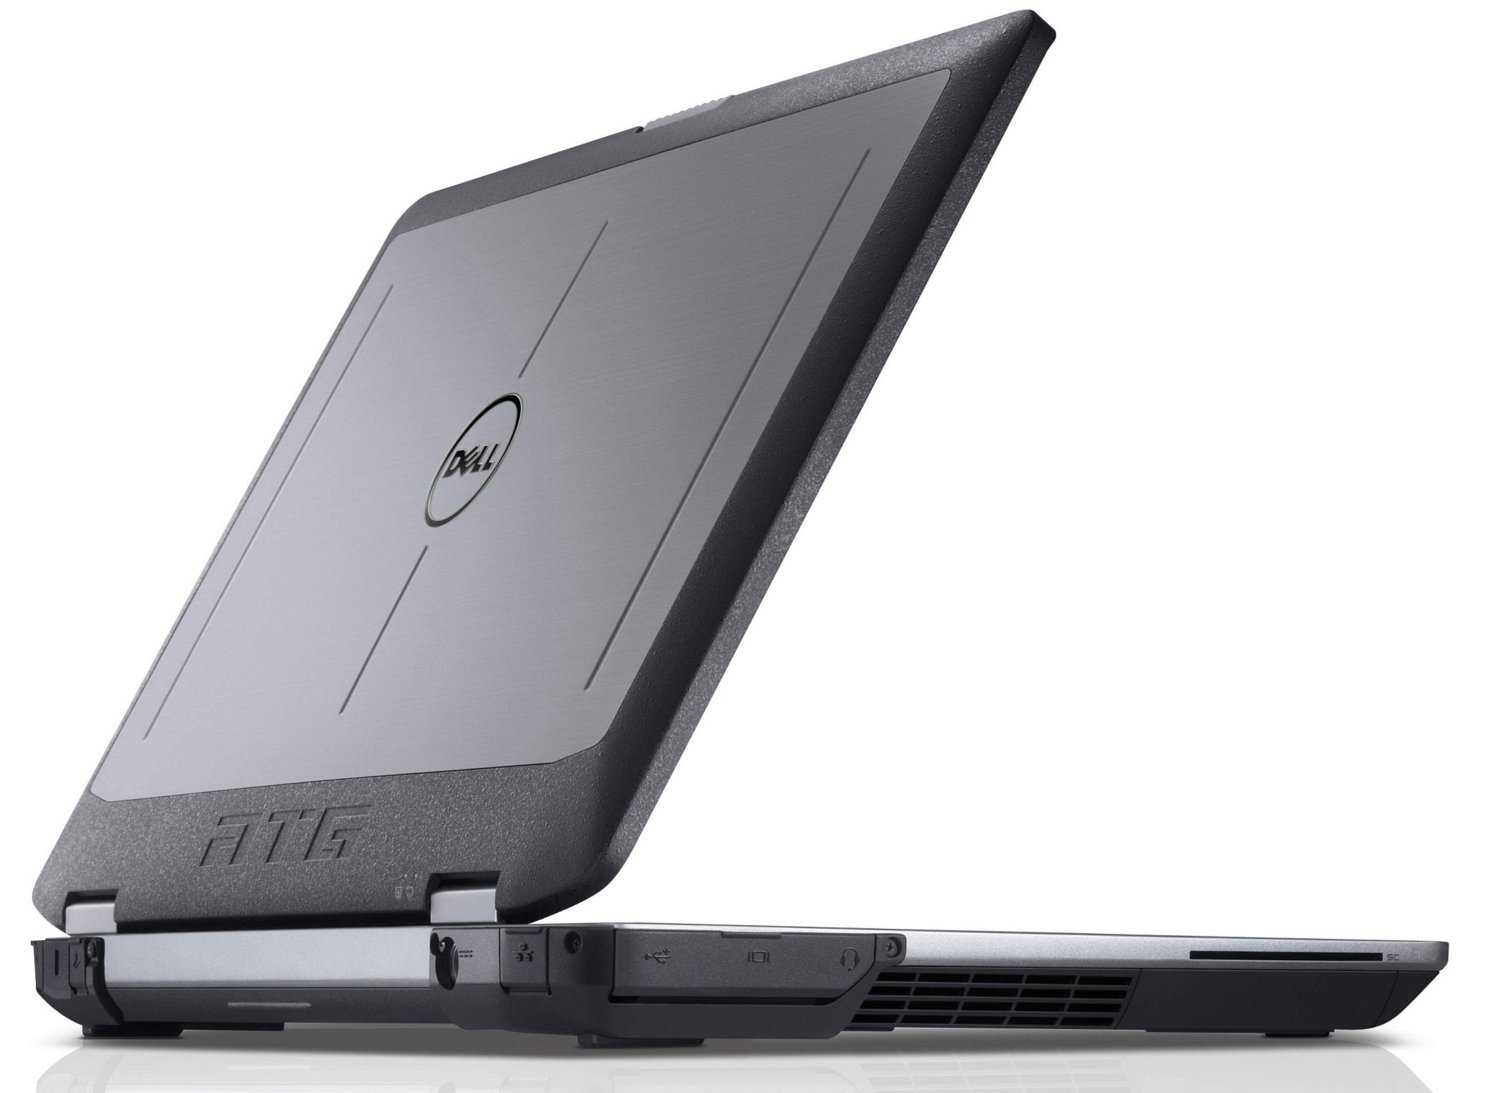 Ноутбук dell latitude e5530 — купить, цена и характеристики, отзывы